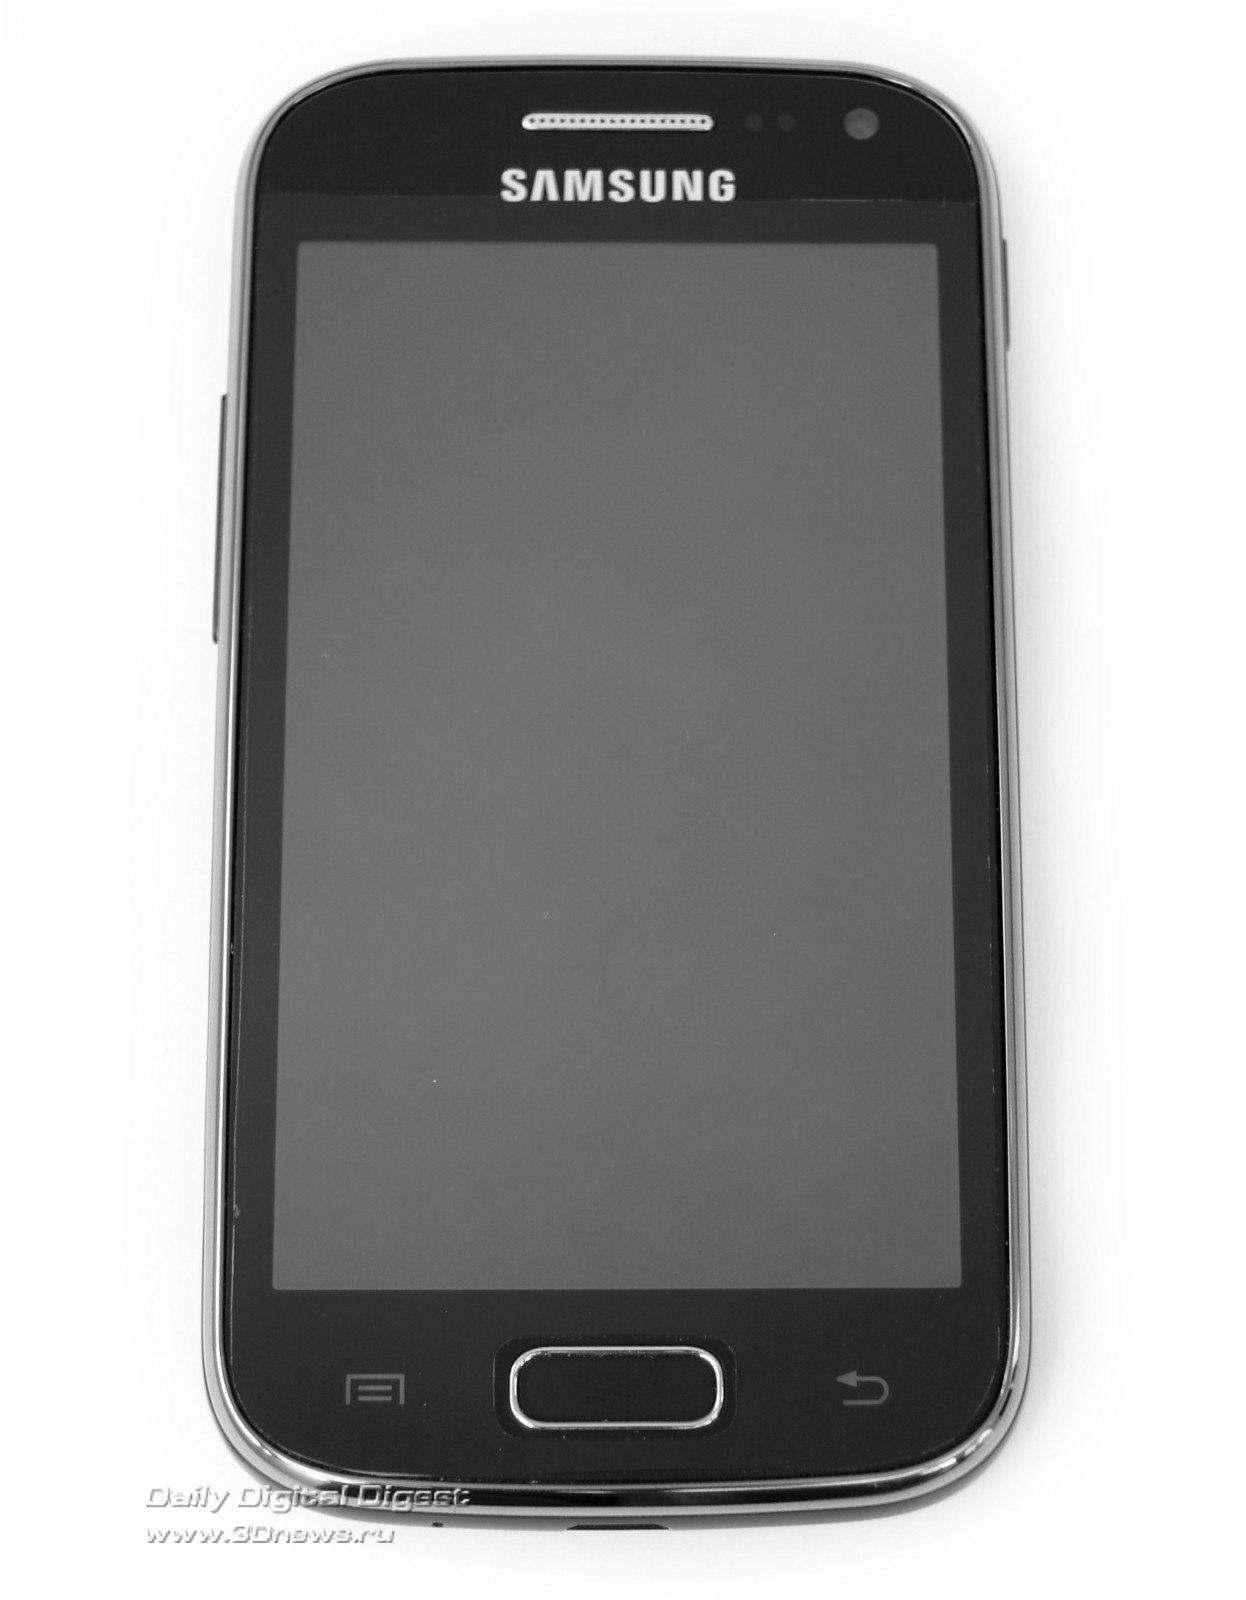 Русская версия самсунг телефон. Samsung gt-s5320. Самсунг 1 модель сенсорный. Первый сенсорный самсунг дуос. Самсунг 5292.